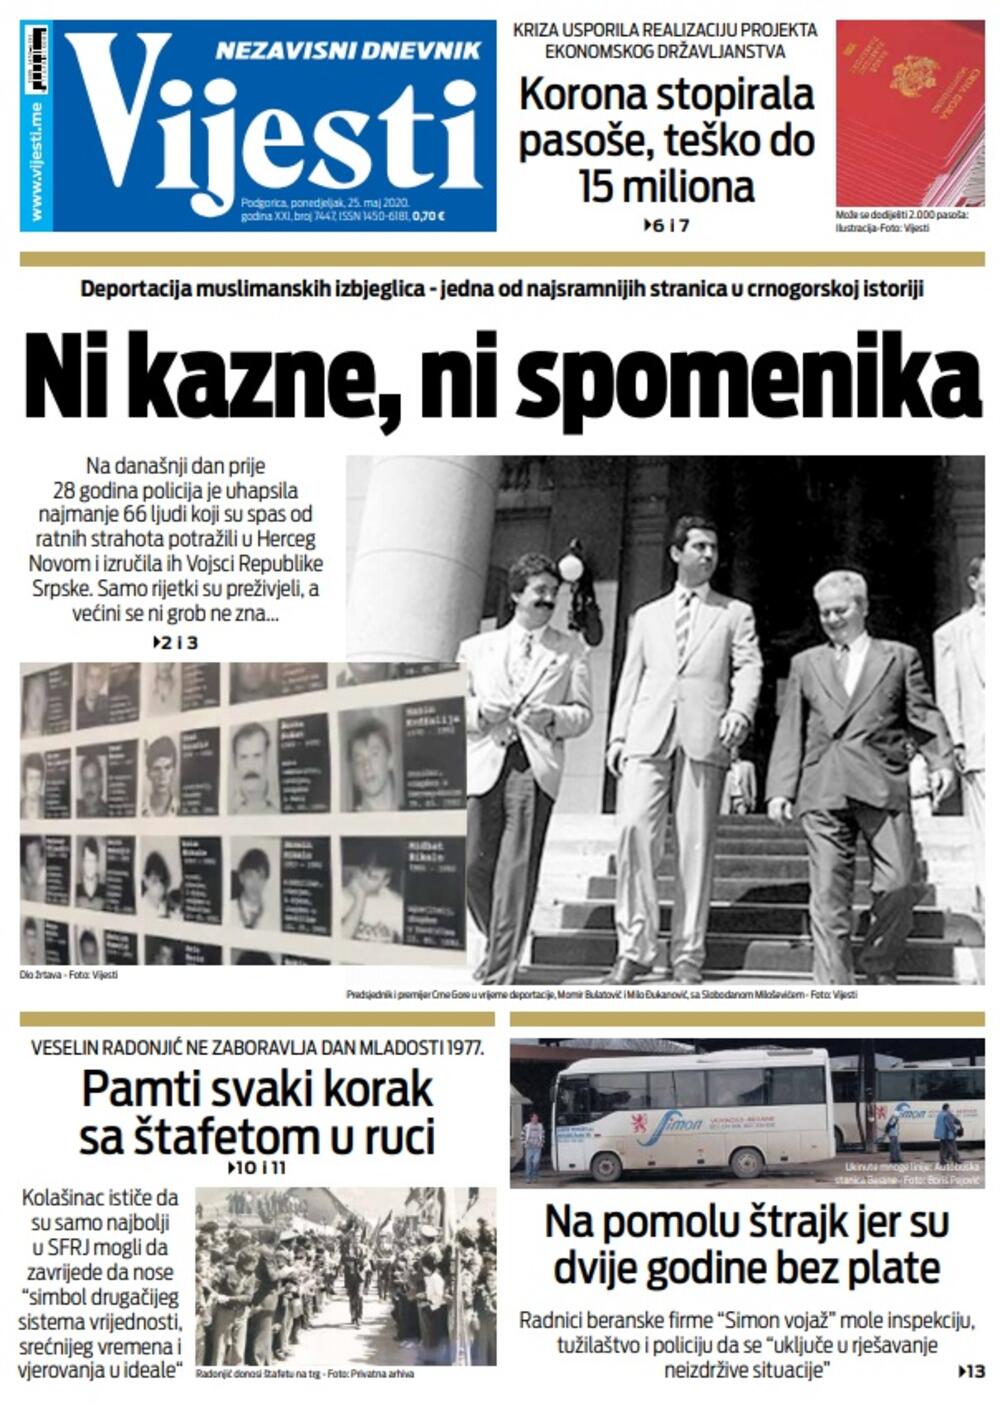 Naslovna strana "Vijesti" za ponedjeljak 25. maj 2020. godine